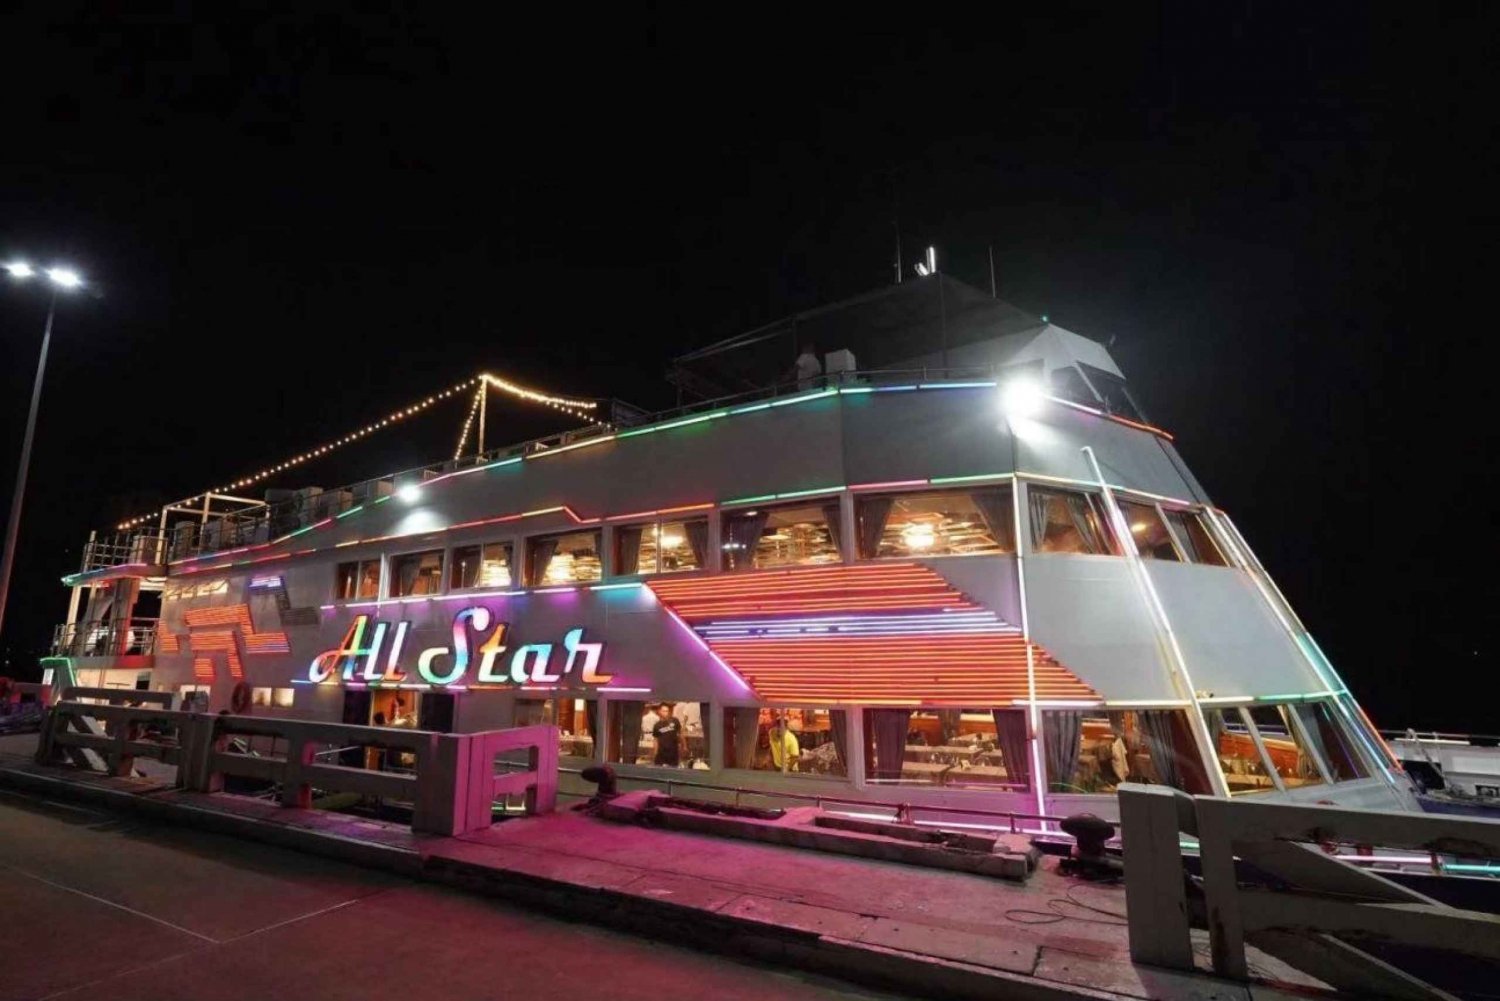 Pattaya: All Star Dinner Cruise, kabaretshow og ølbuffet